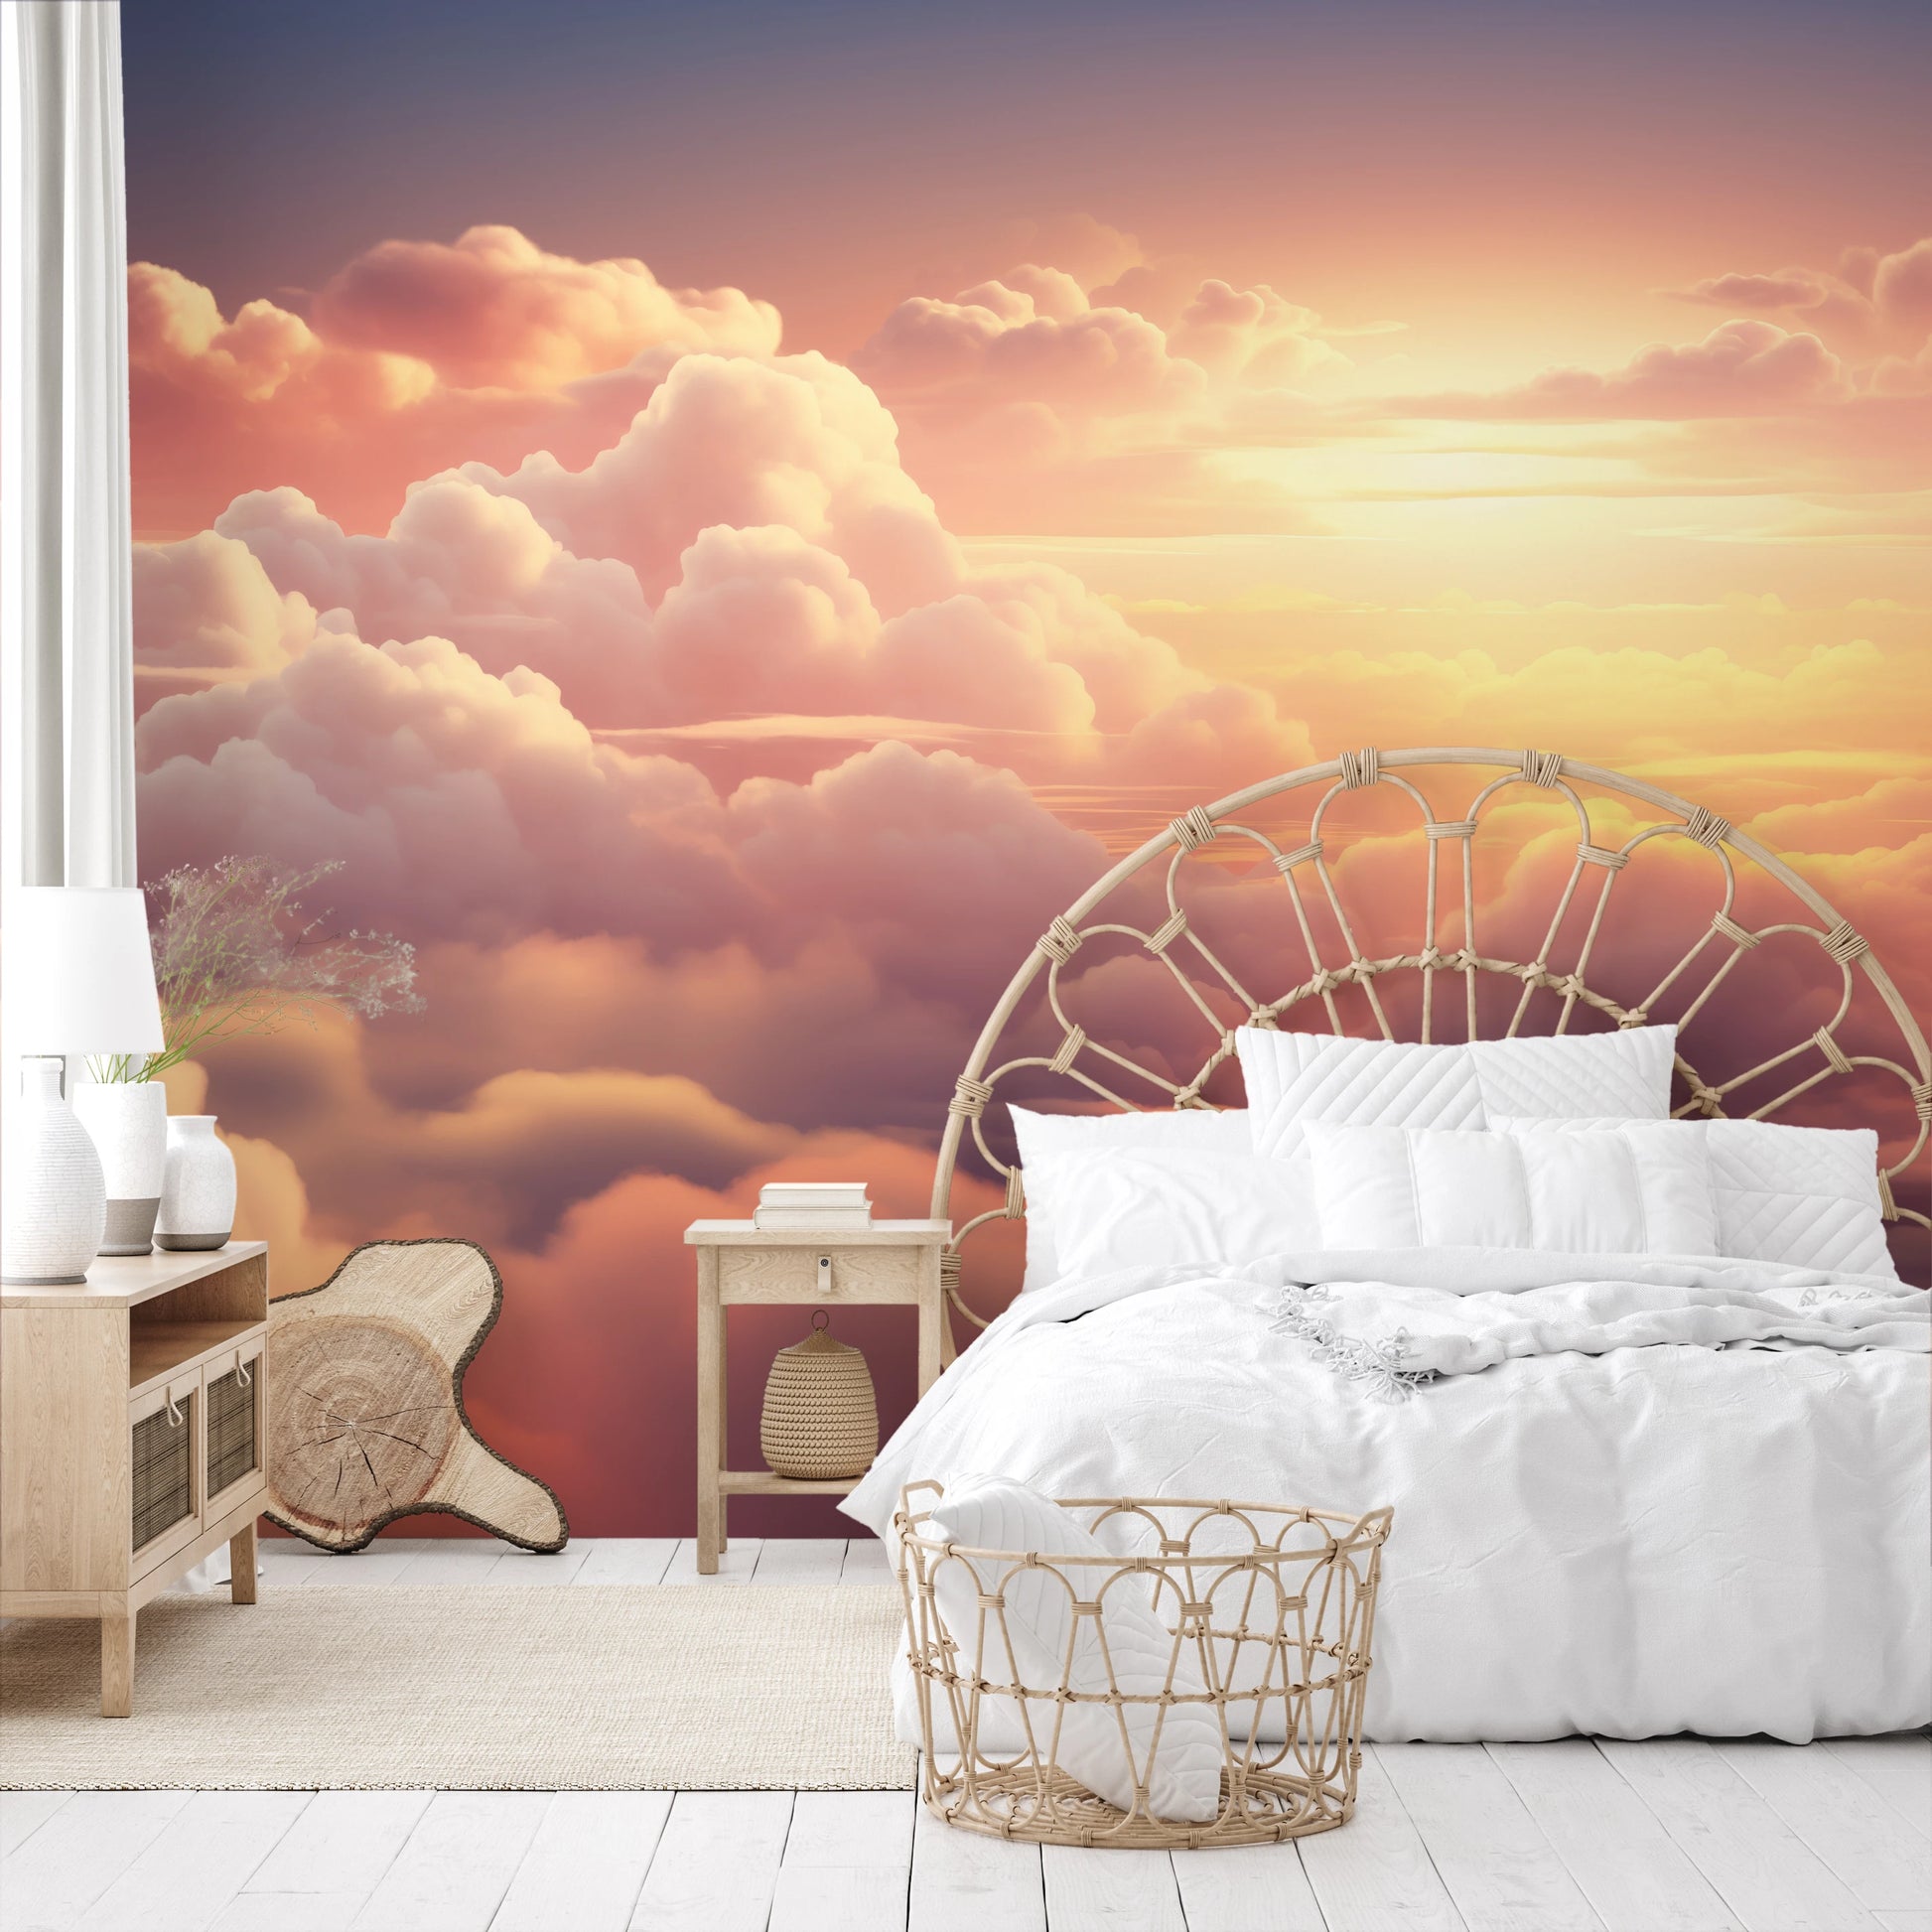 Wzór fototapety malowanej o nazwie Azure Dream pokazanej w aranżacji wnętrza.